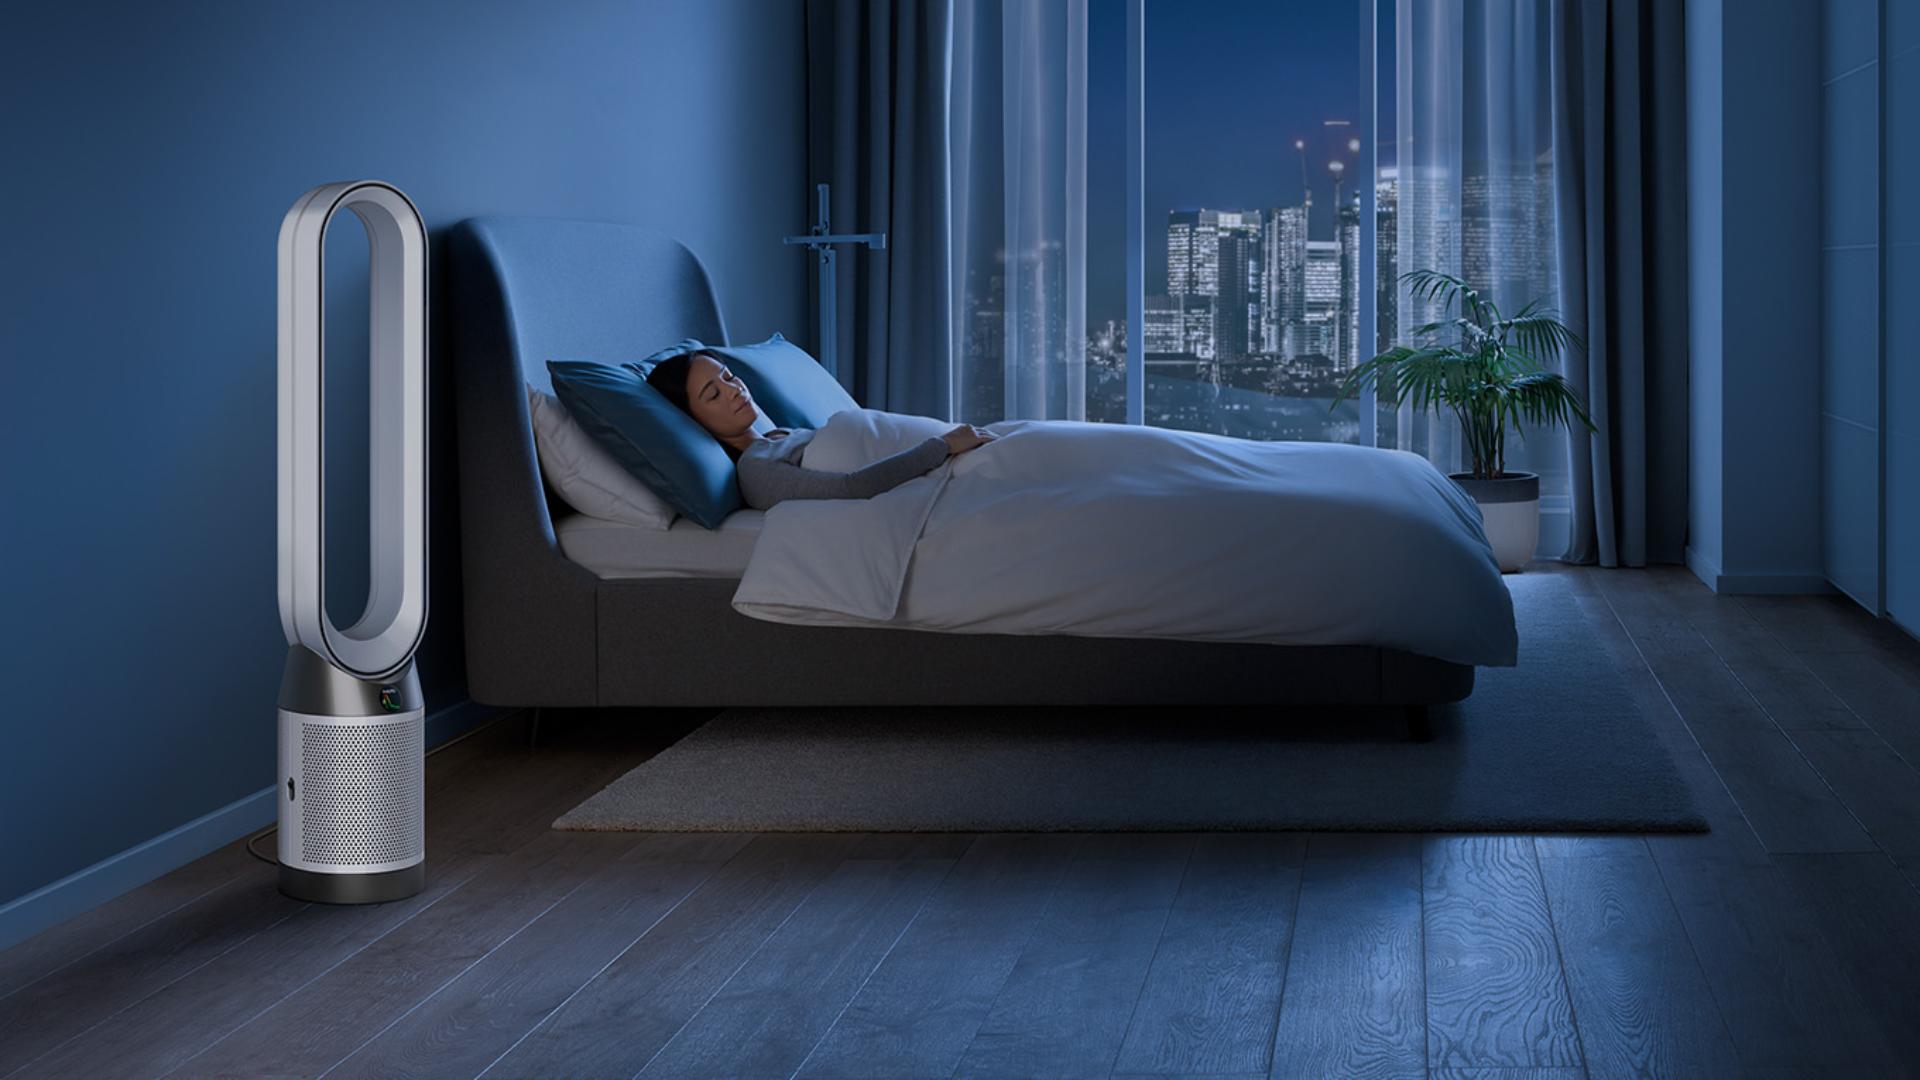 Urządzenie Dyson, oczyszczające powietrze w sypialni